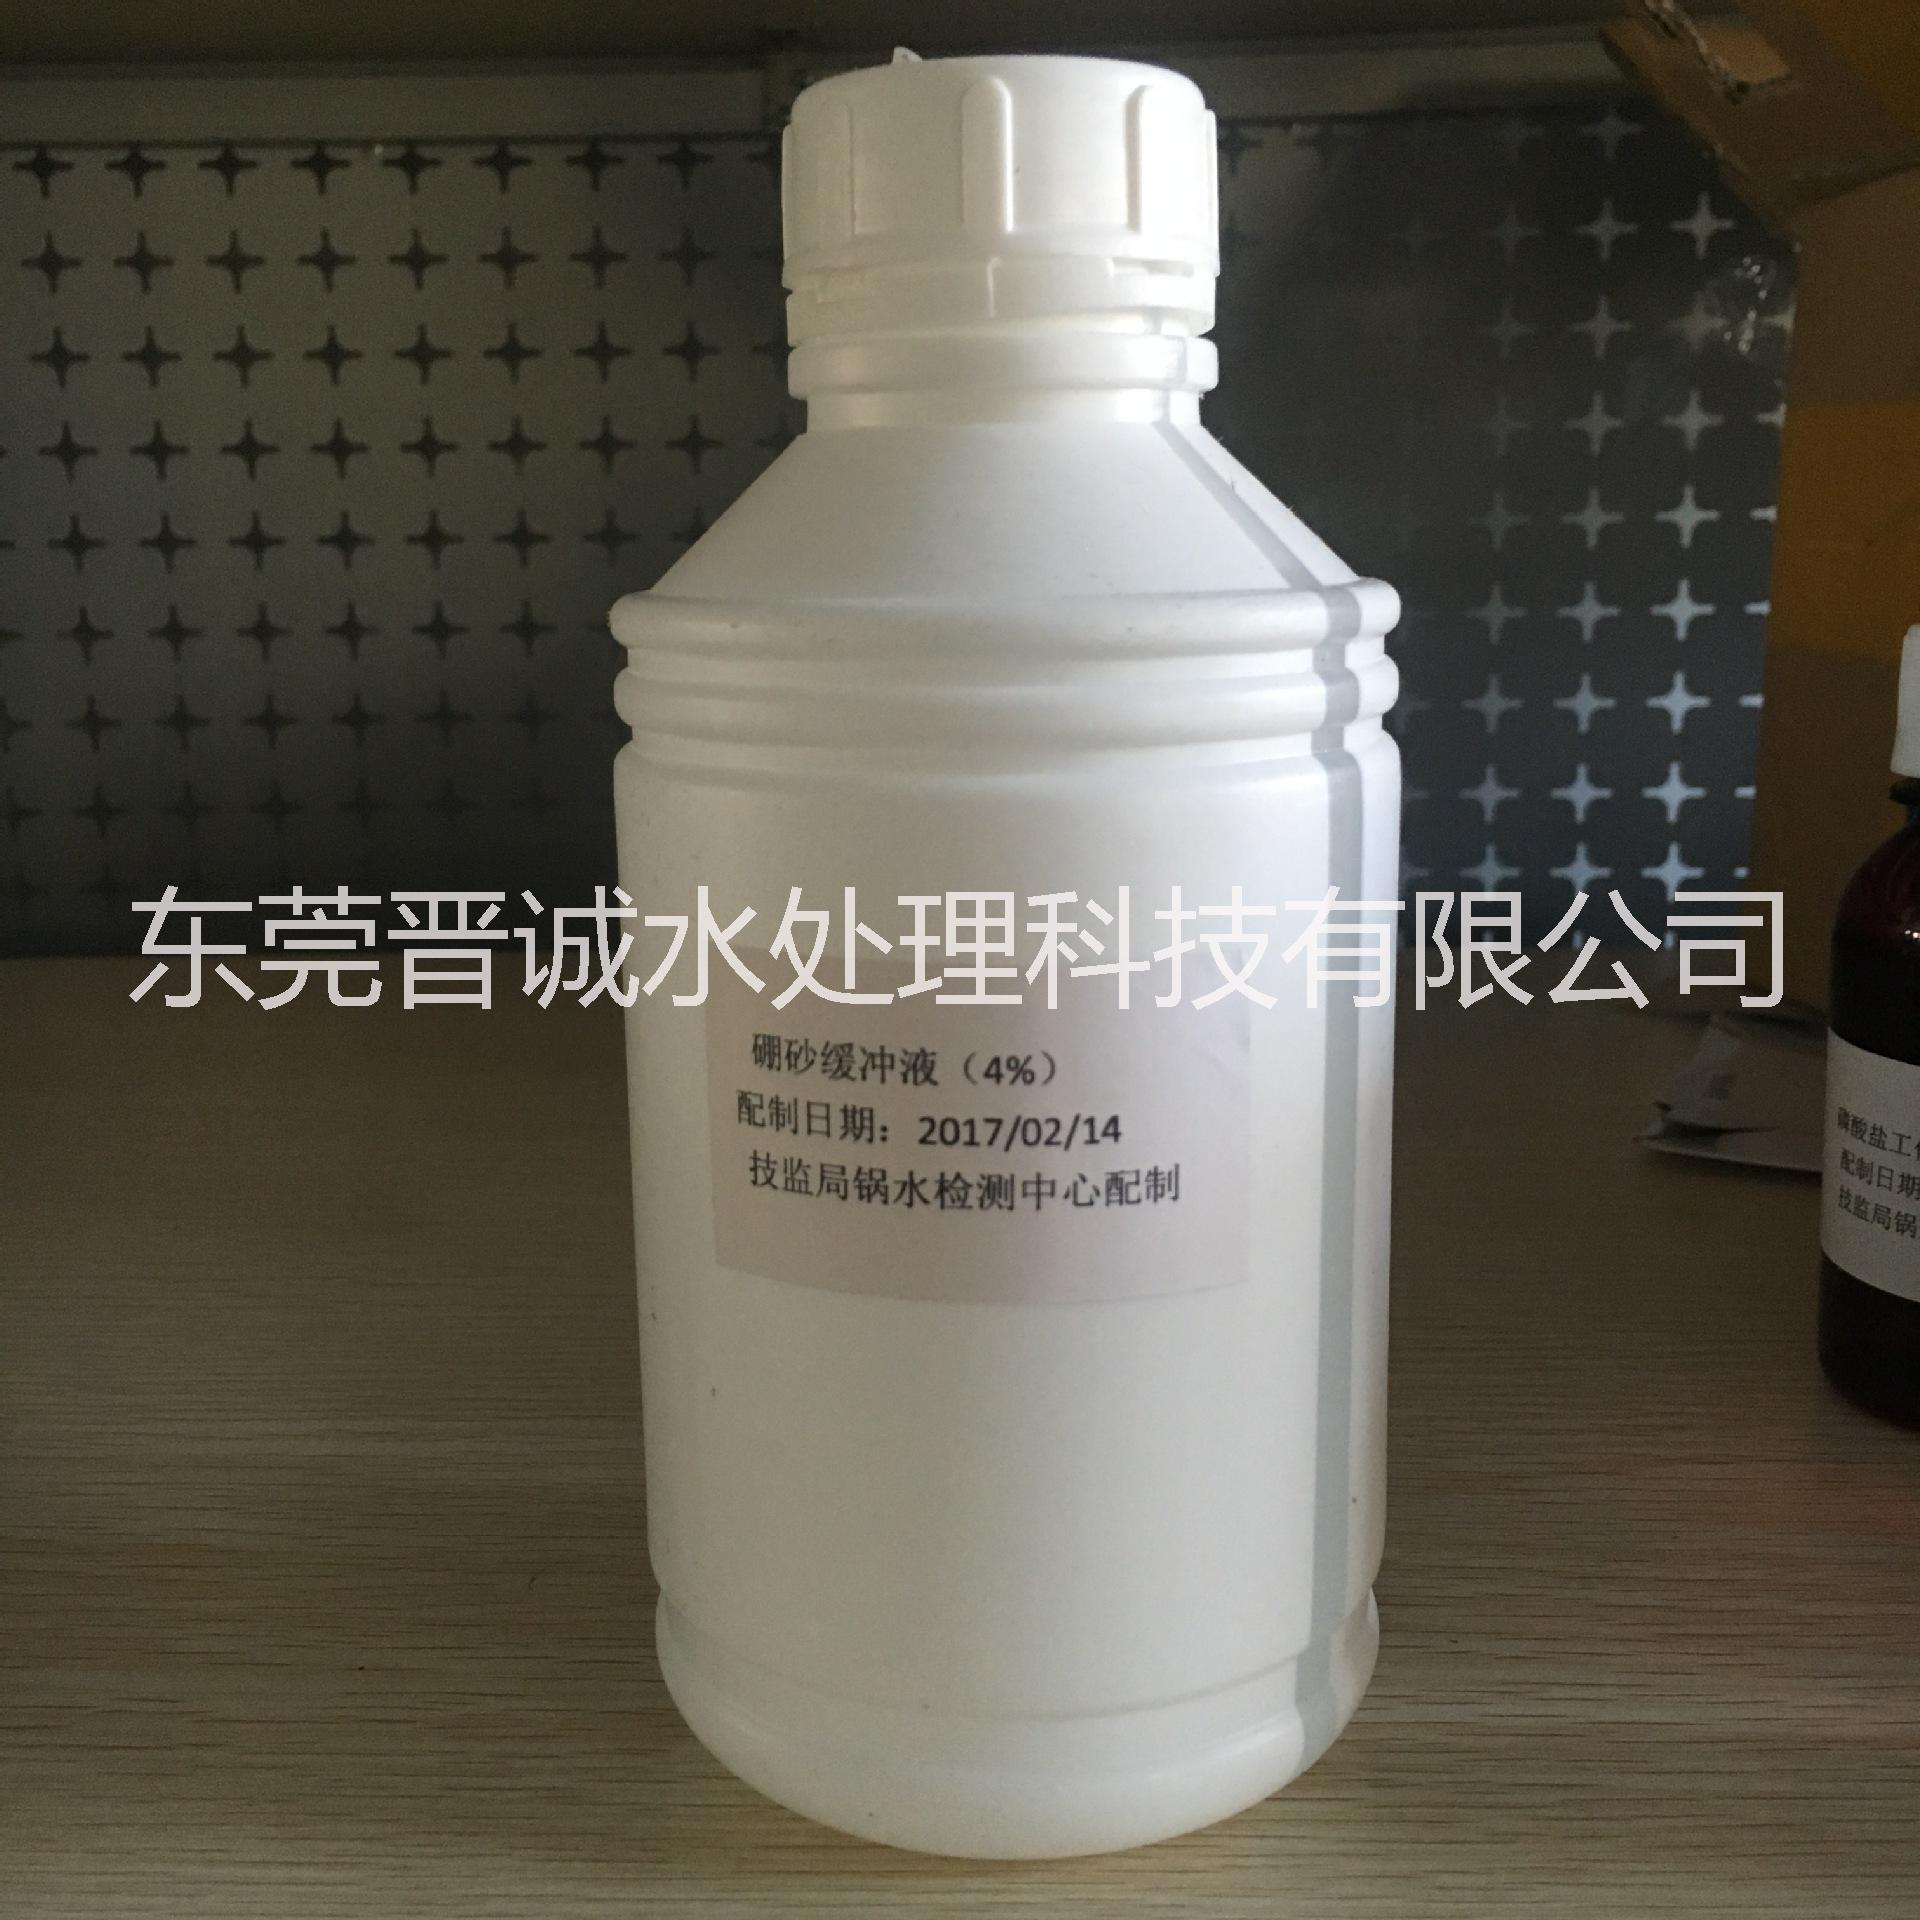 厂家直销 硼砂缓冲液试剂 化验试剂价格图片